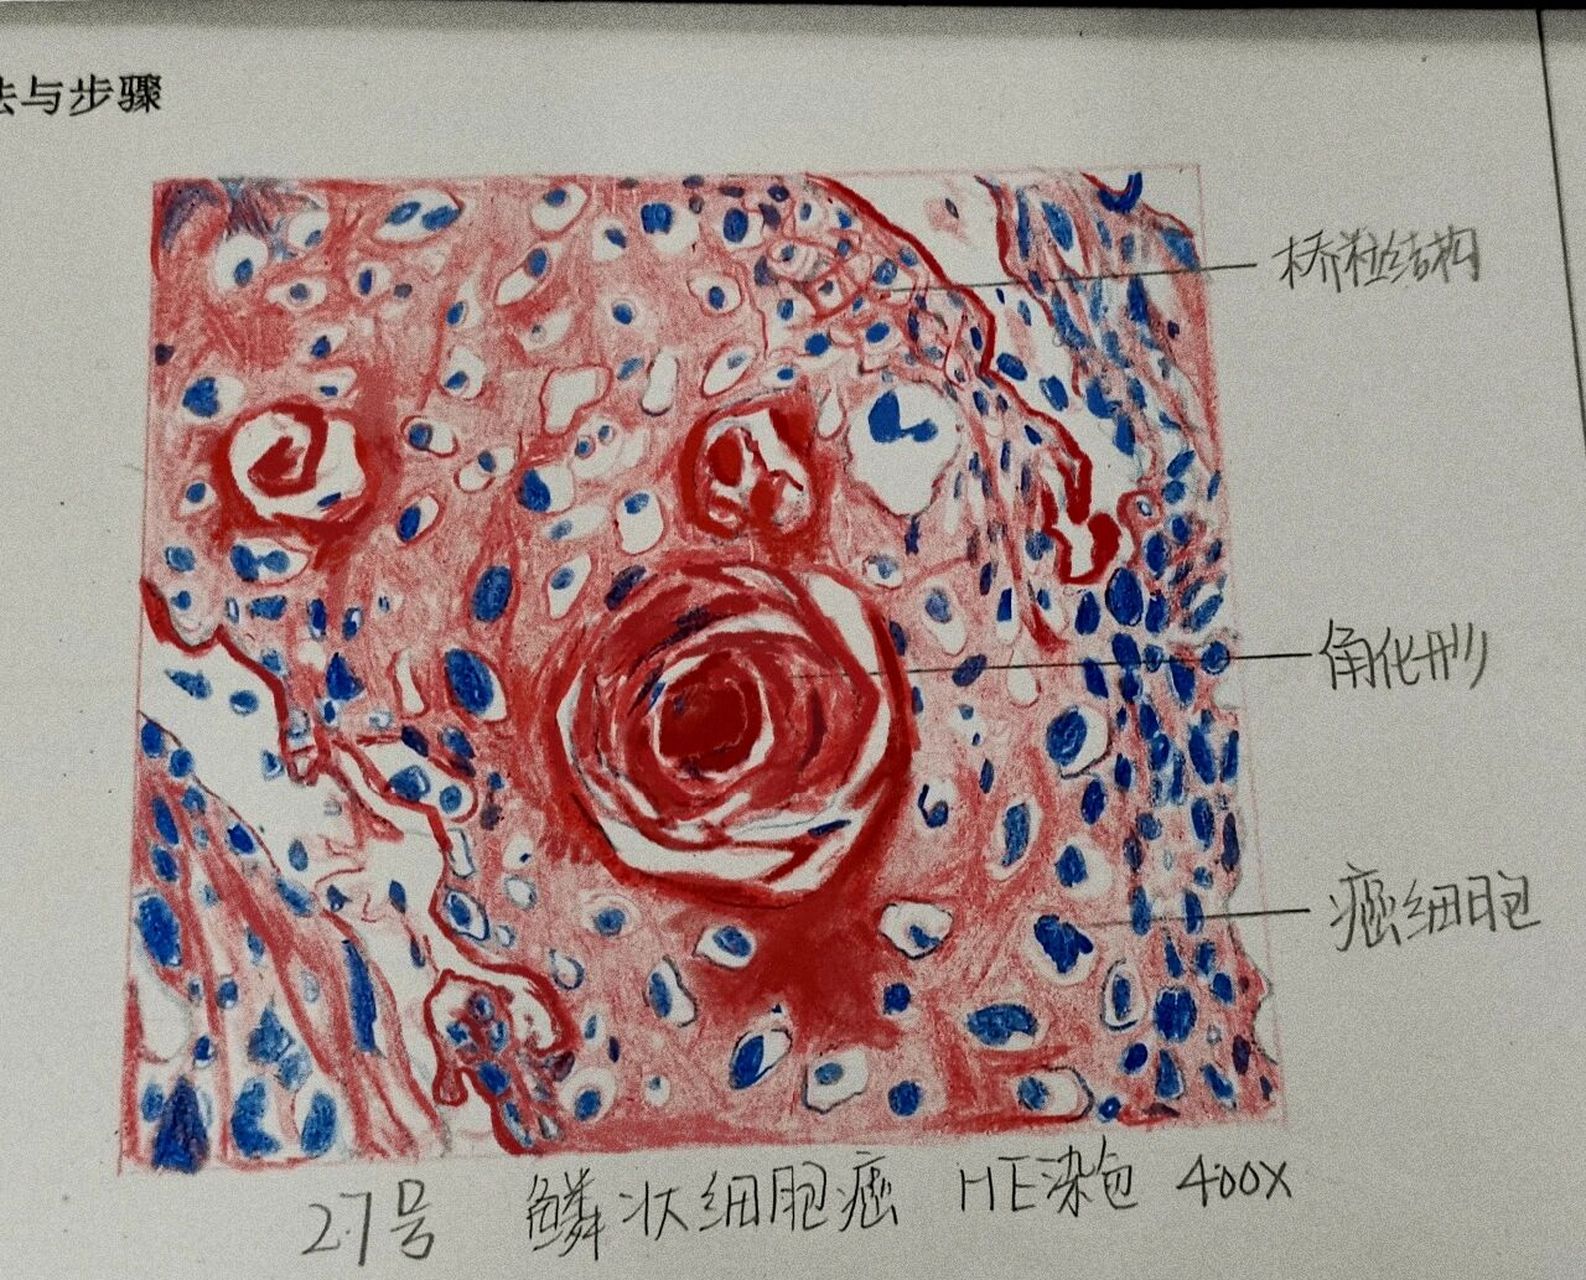 红蓝铅笔画图 磷状细胞癌 